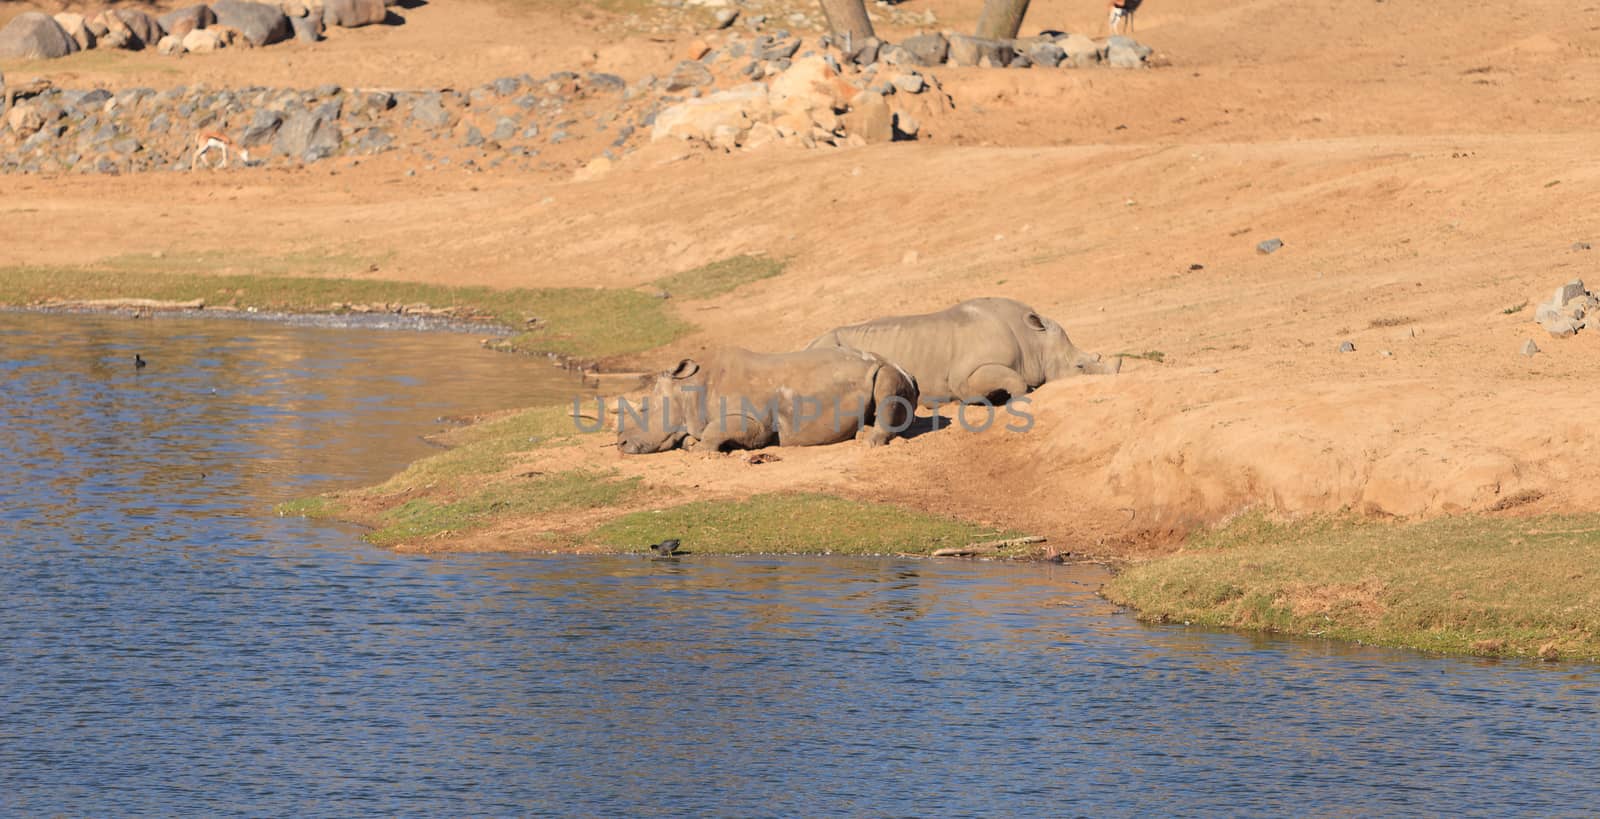 White African rhinoceros by steffstarr